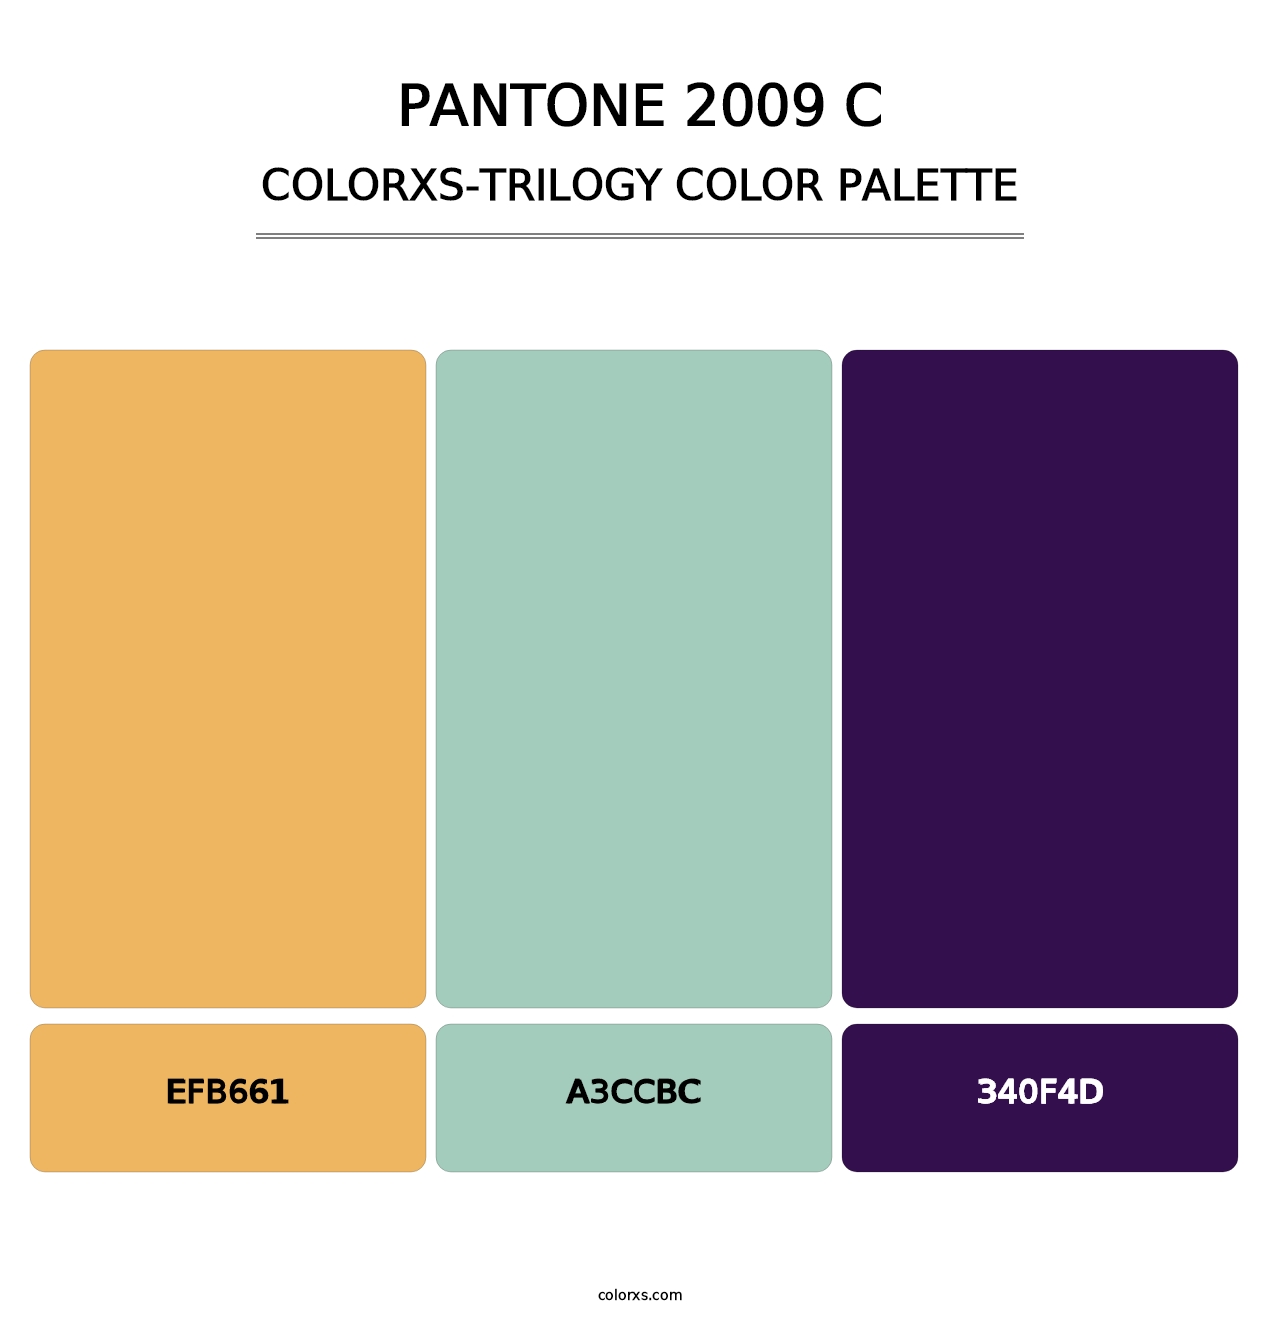 PANTONE 2009 C - Colorxs Trilogy Palette